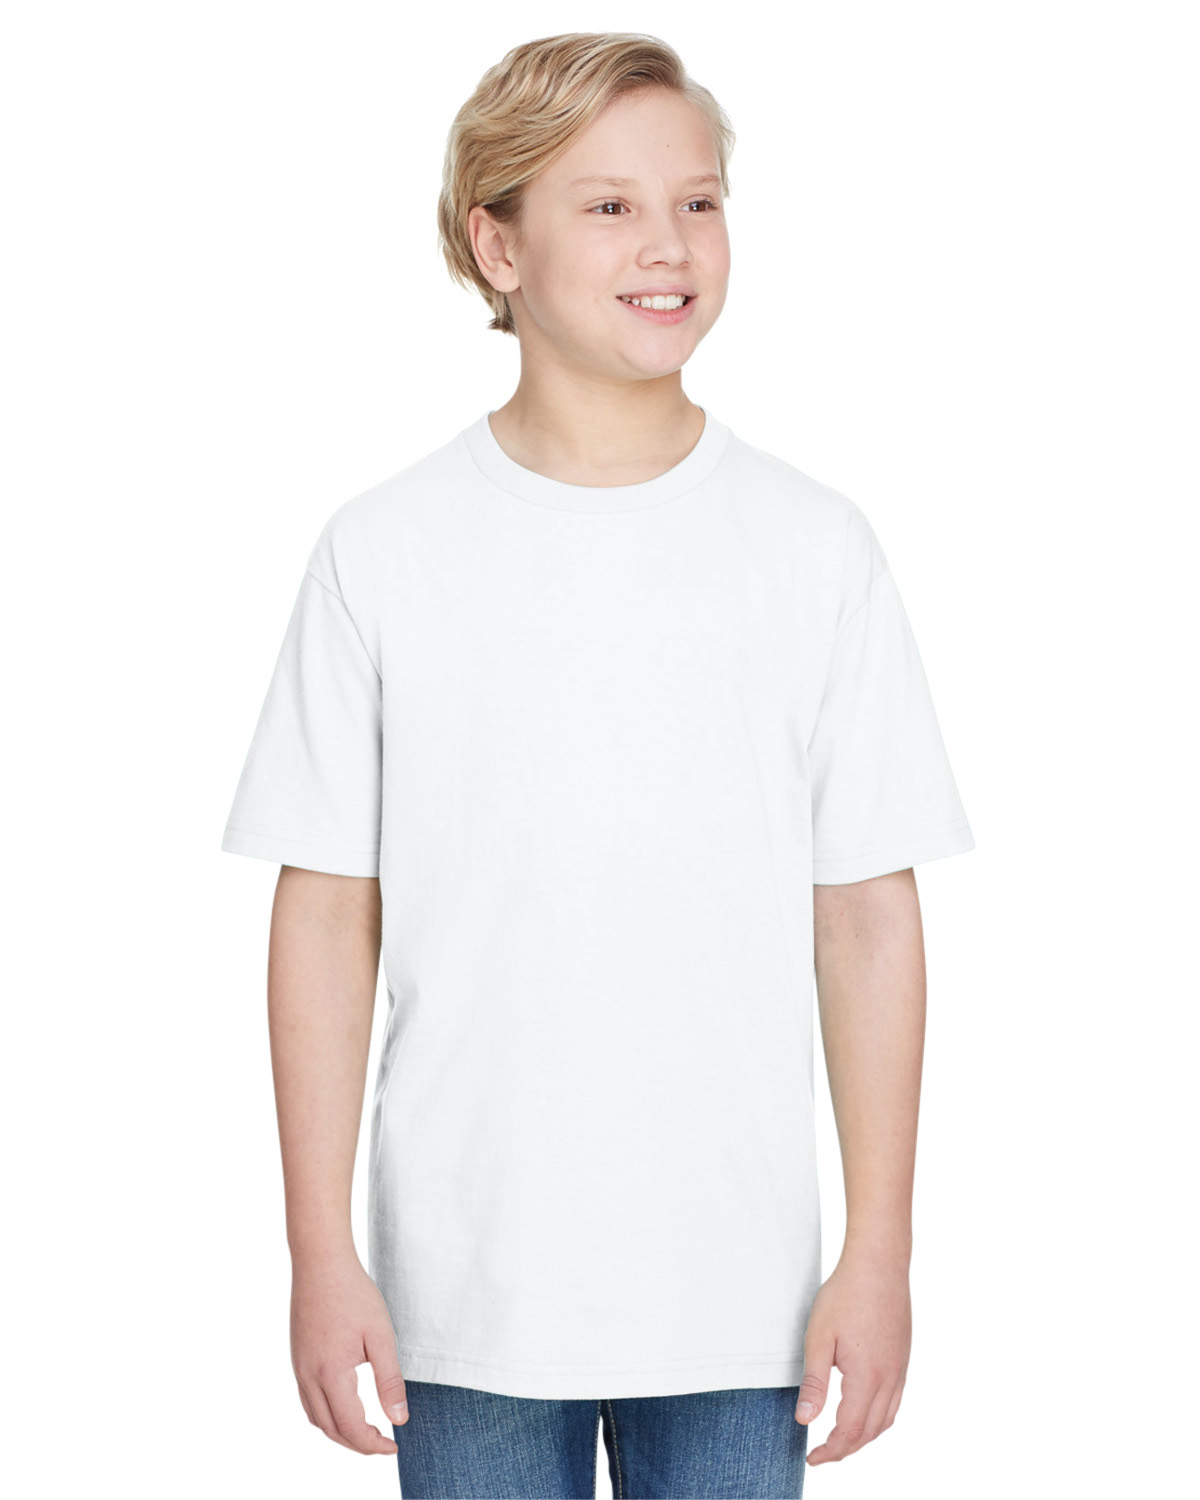 Gildan Hammer T Shirt Size Chart